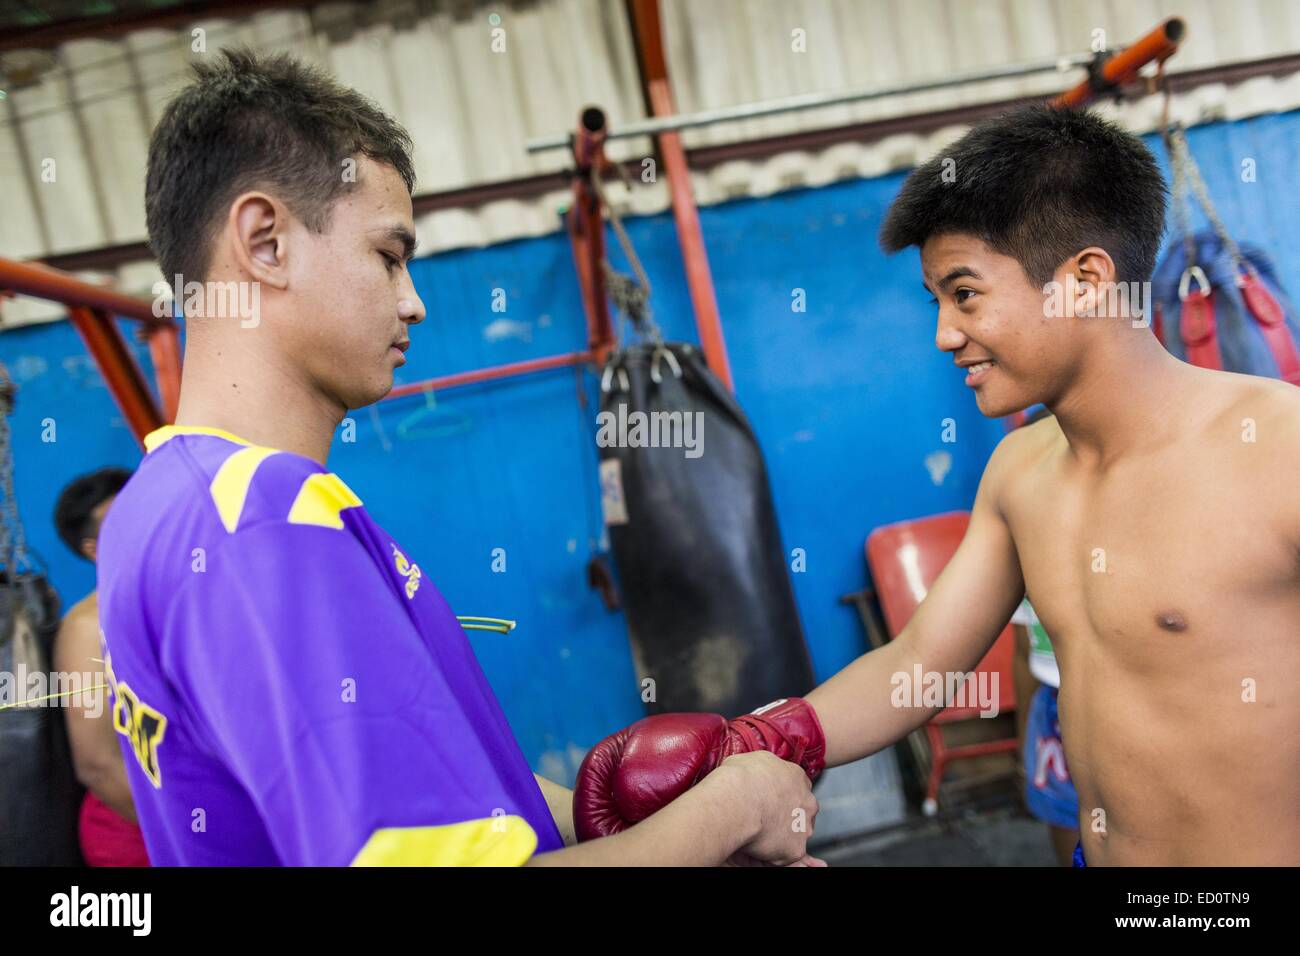 Bangkok, Bangkok, Thaïlande. Dec 23, 2014. Mettre leurs gants sur les boxeurs avant le combat à l'Kanisorn sport à Bangkok. Le Kanisorn boxing gym est une petite salle de sport le long de la Wong Wian Yai - Samut Sakhon voie ferrée. Les jeunes des communautés voisines viennent à la salle de sport pour apprendre la boxe. Le Muay Thai (Muai thaï) est un art martial mixte développé en Thaïlande. Le Muay Thai est devenue très répandue dans le monde au xxe siècle, quand les boxeurs Thaï défait d'autres boxeurs bien connu. Une ligue professionnelle est régie par le monde Conseil de Muay Thai. Muay Thai est souvent considérée comme un moyen de sortir de la pauvreté f Banque D'Images